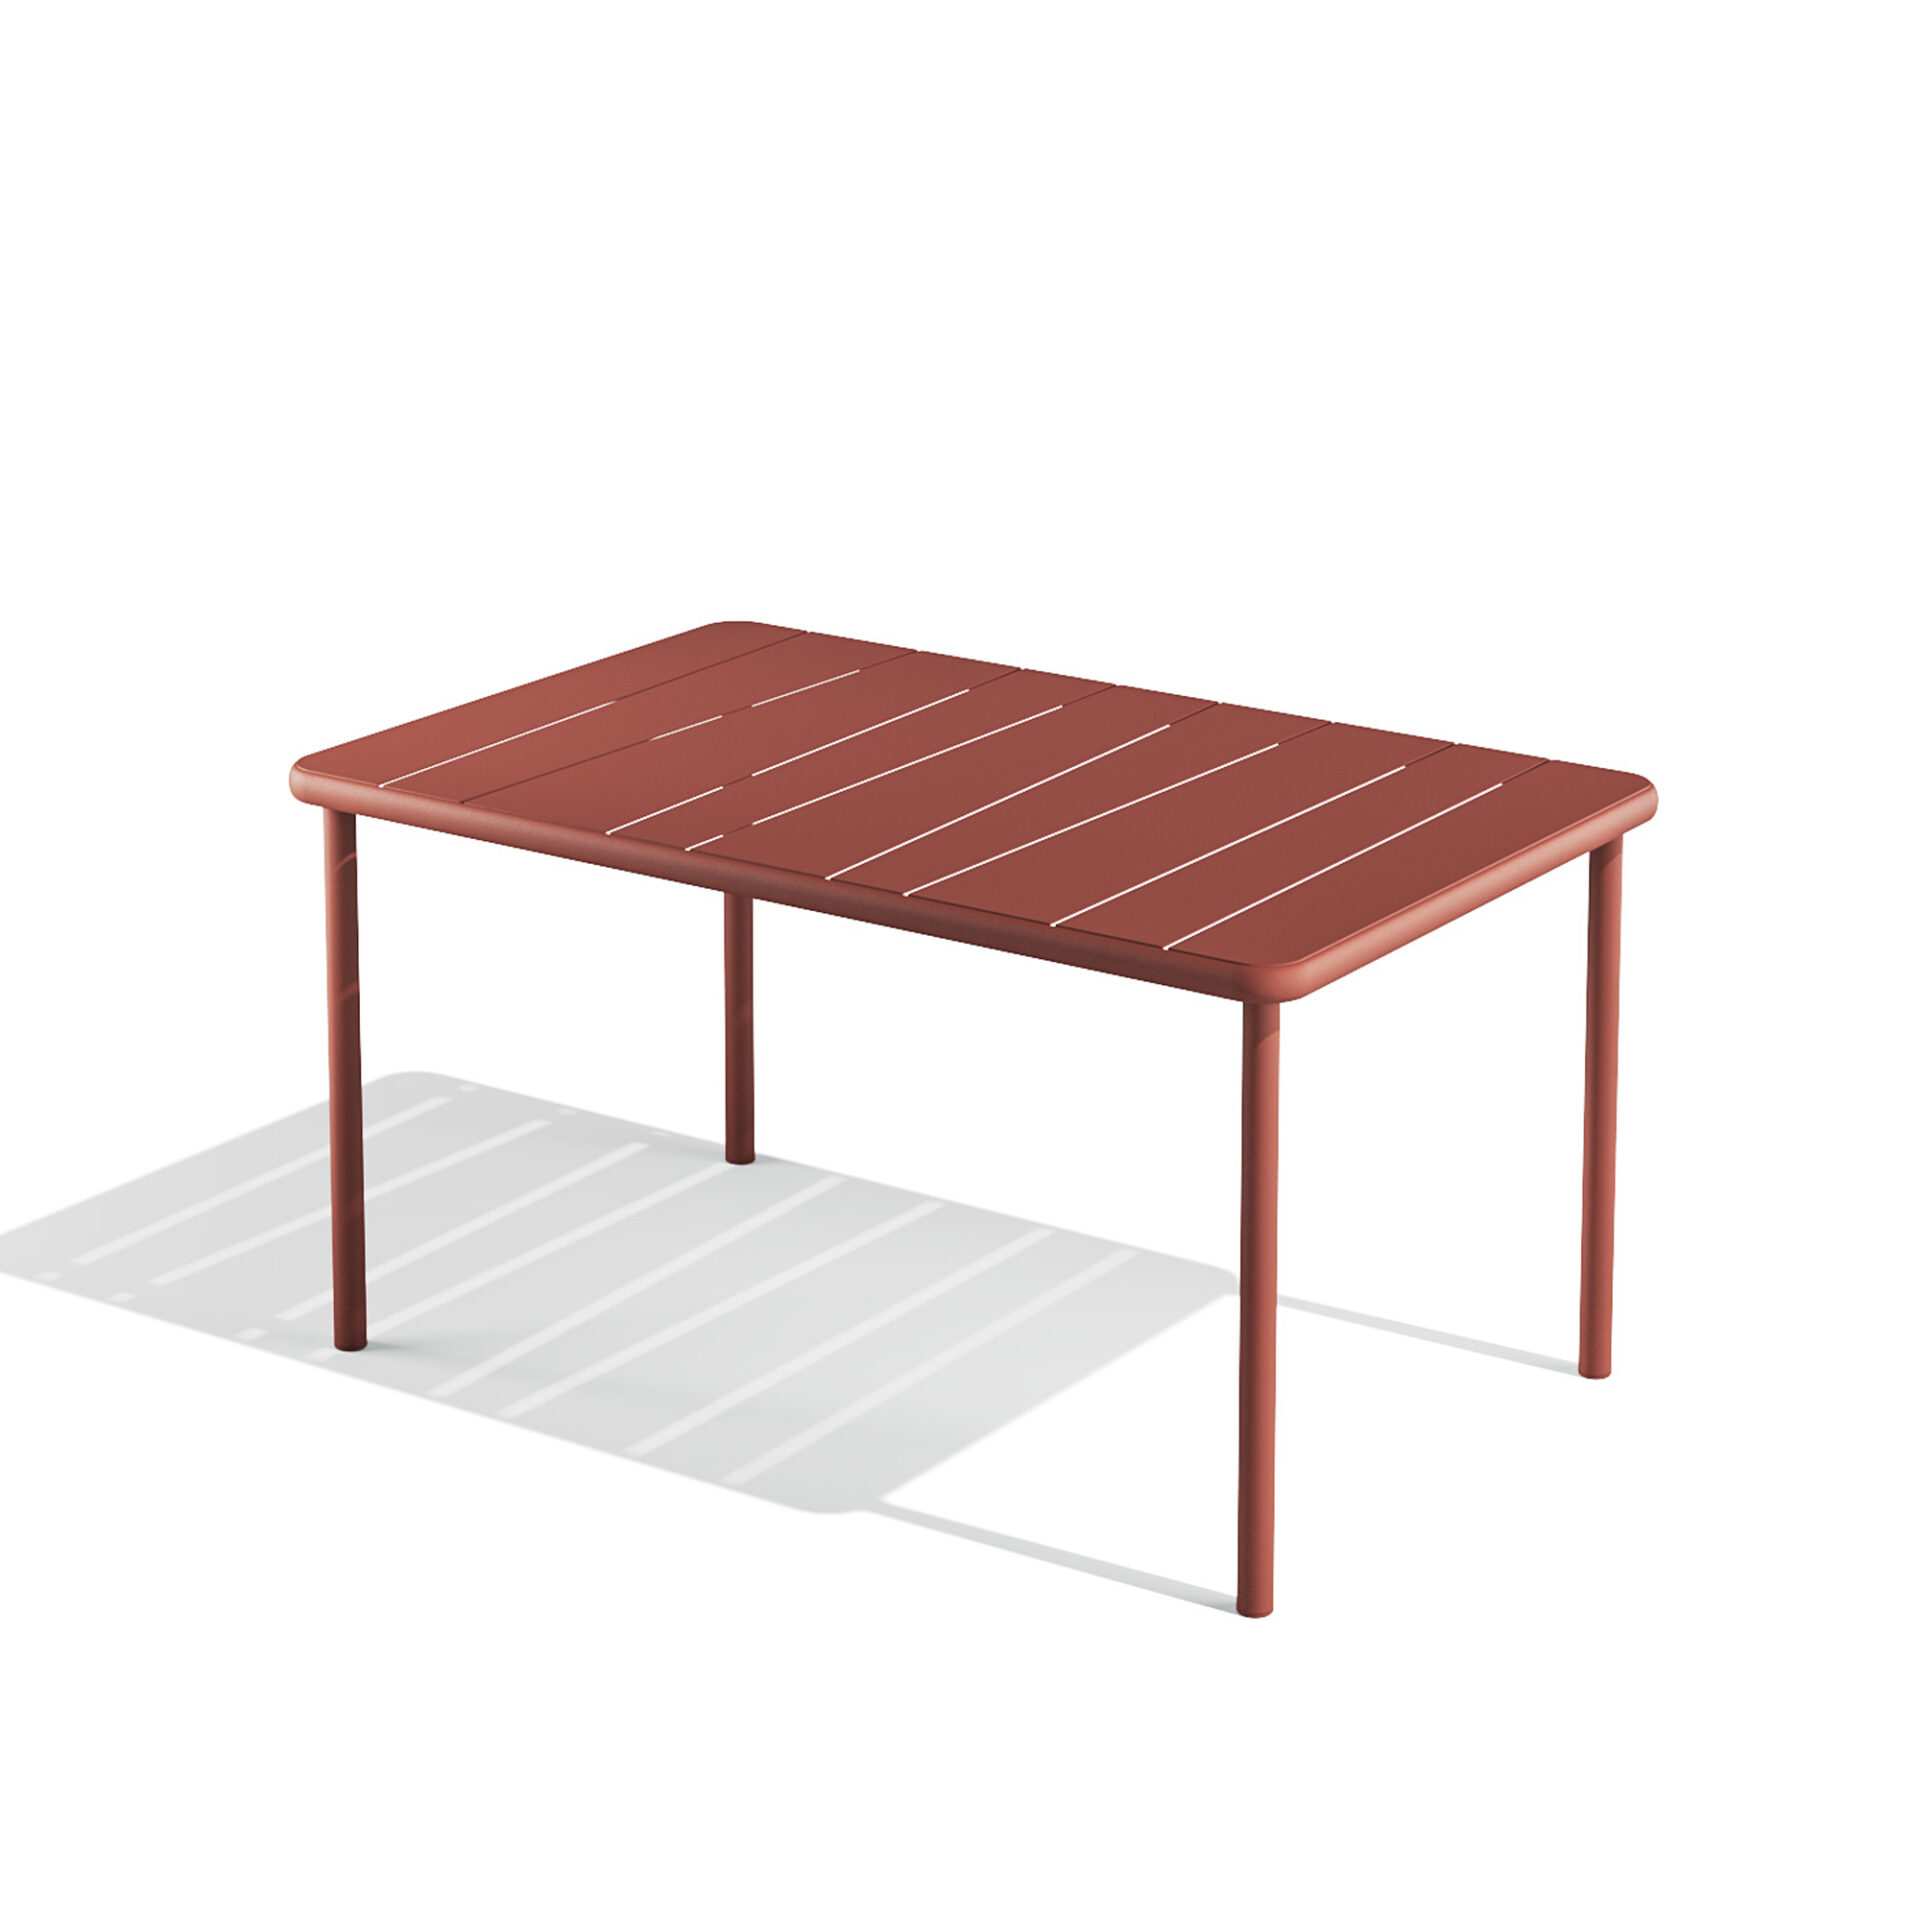 Bangi rectangular table 140